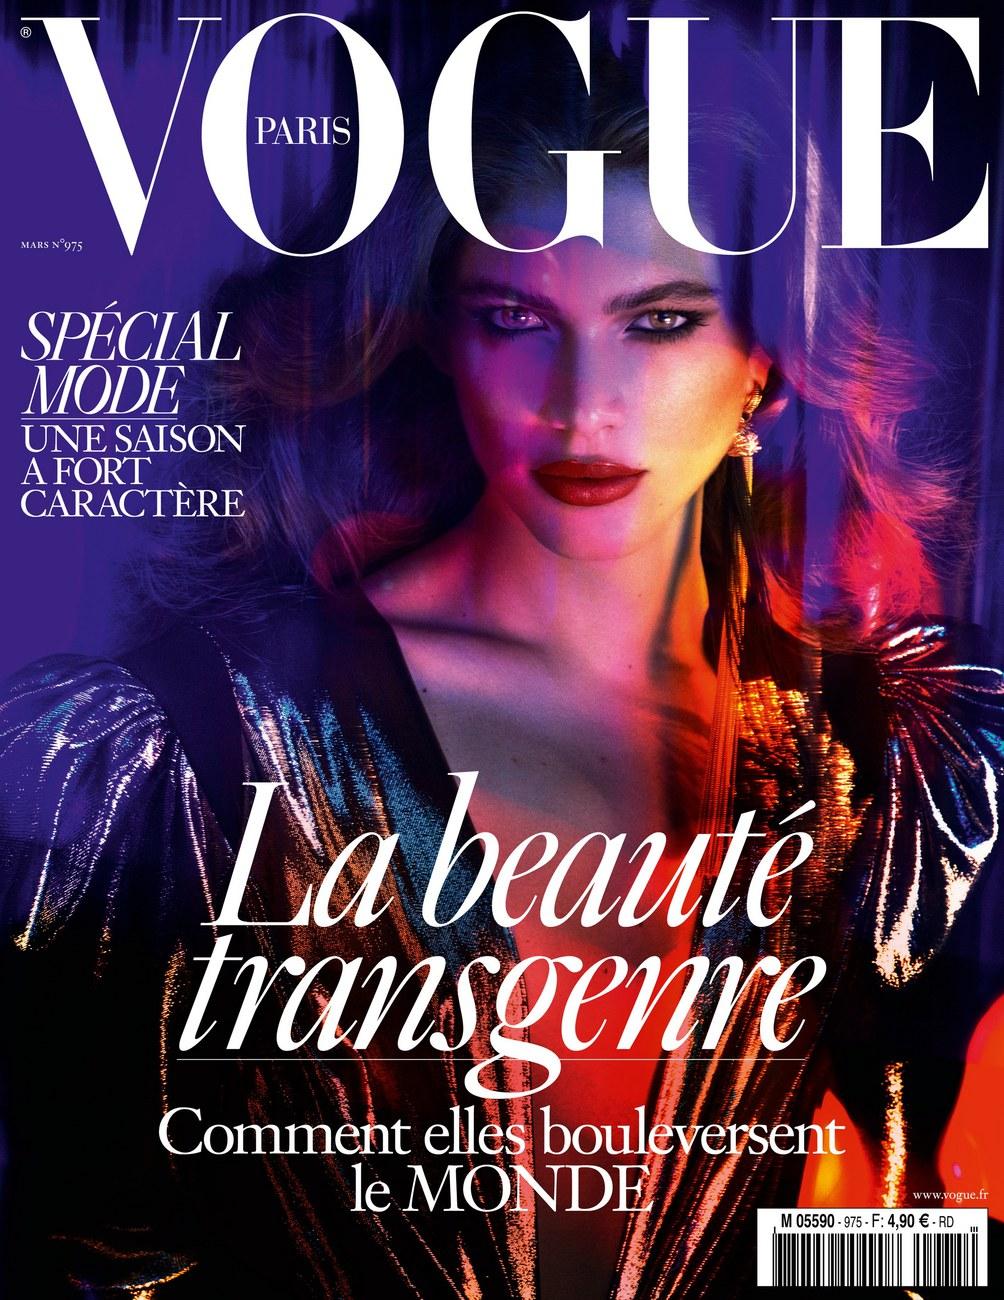 La couverture de Vogue Paris pour laquelle a posé Valentina Sampaio. [EPA - Mert and Marcus for Vogue Paris]